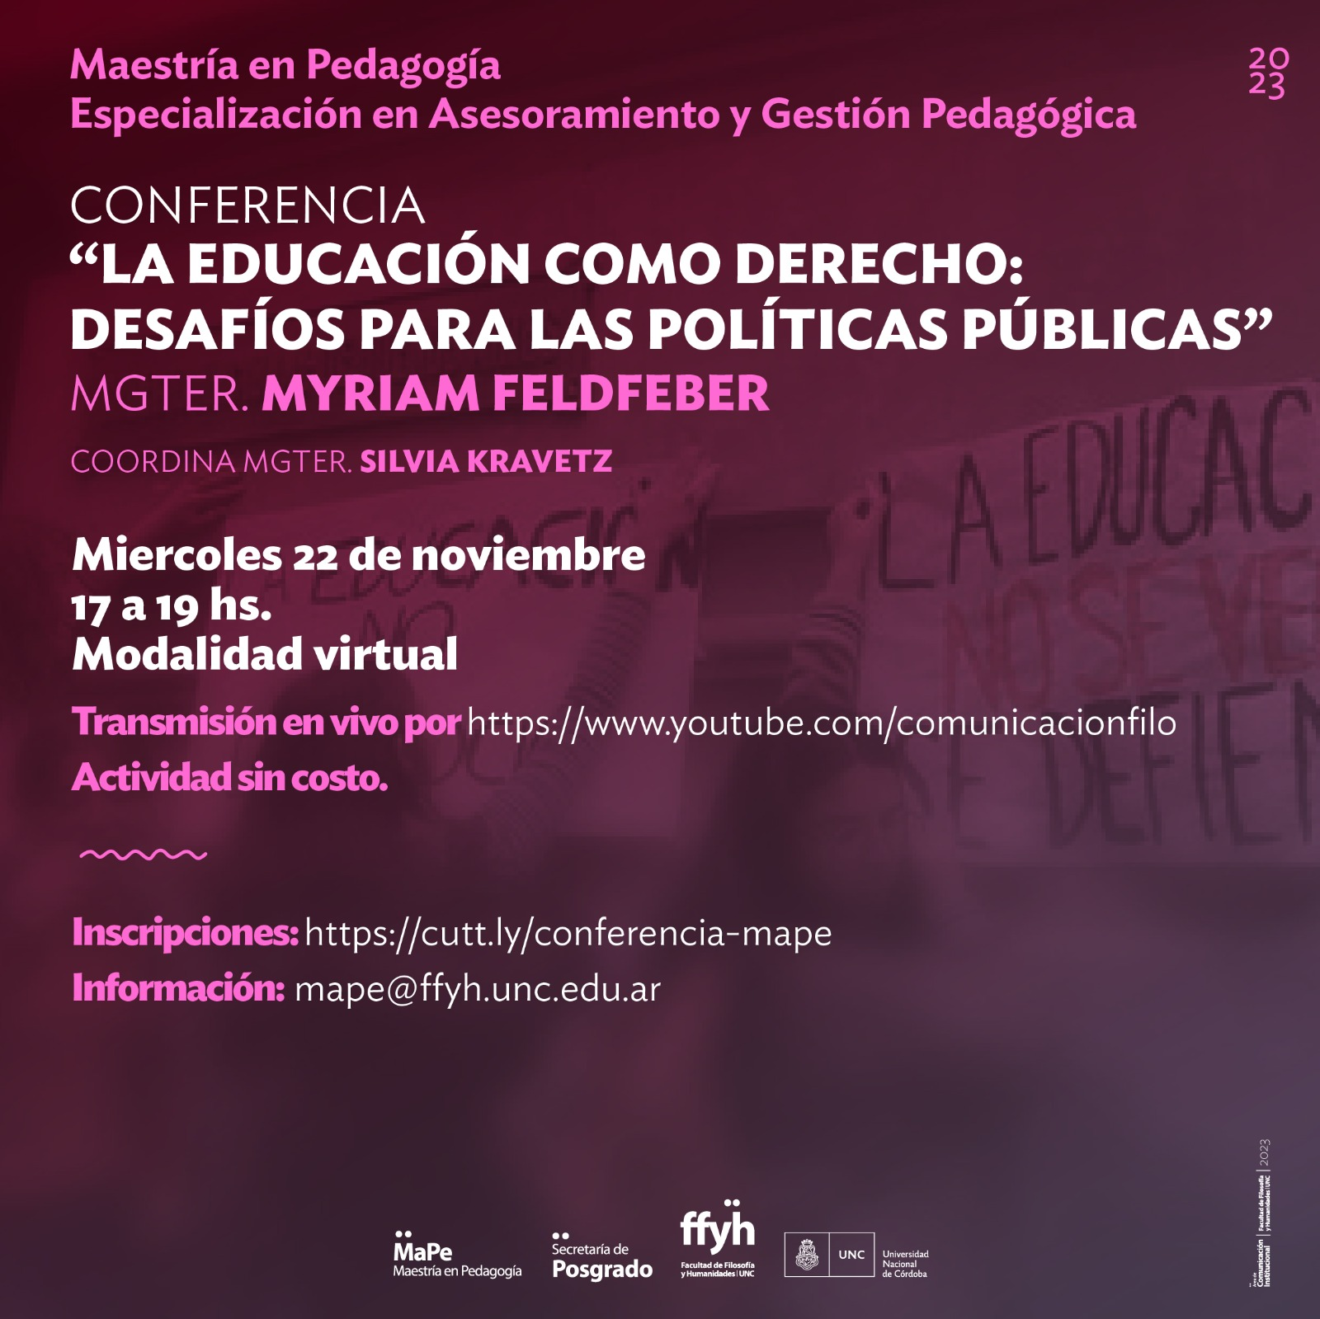 Conferencia: “La educación como derecho: desafíos para las políticas públicas”